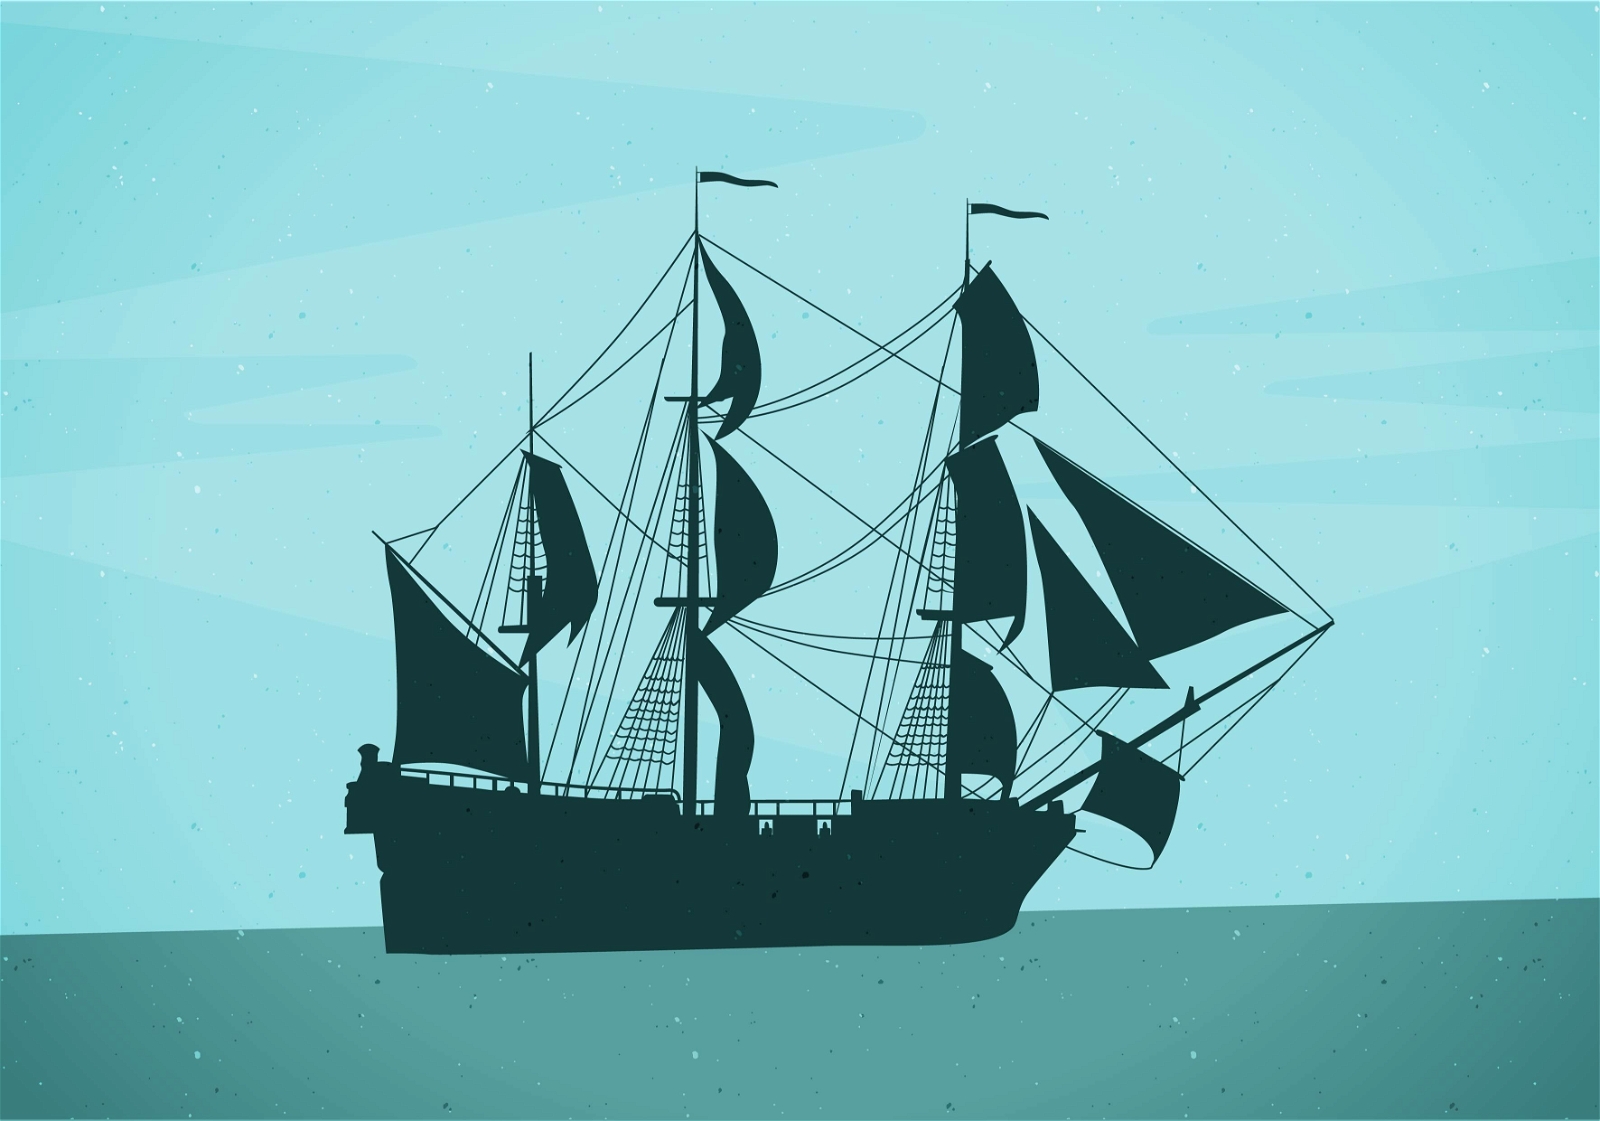 Silhouette Pirate Ship